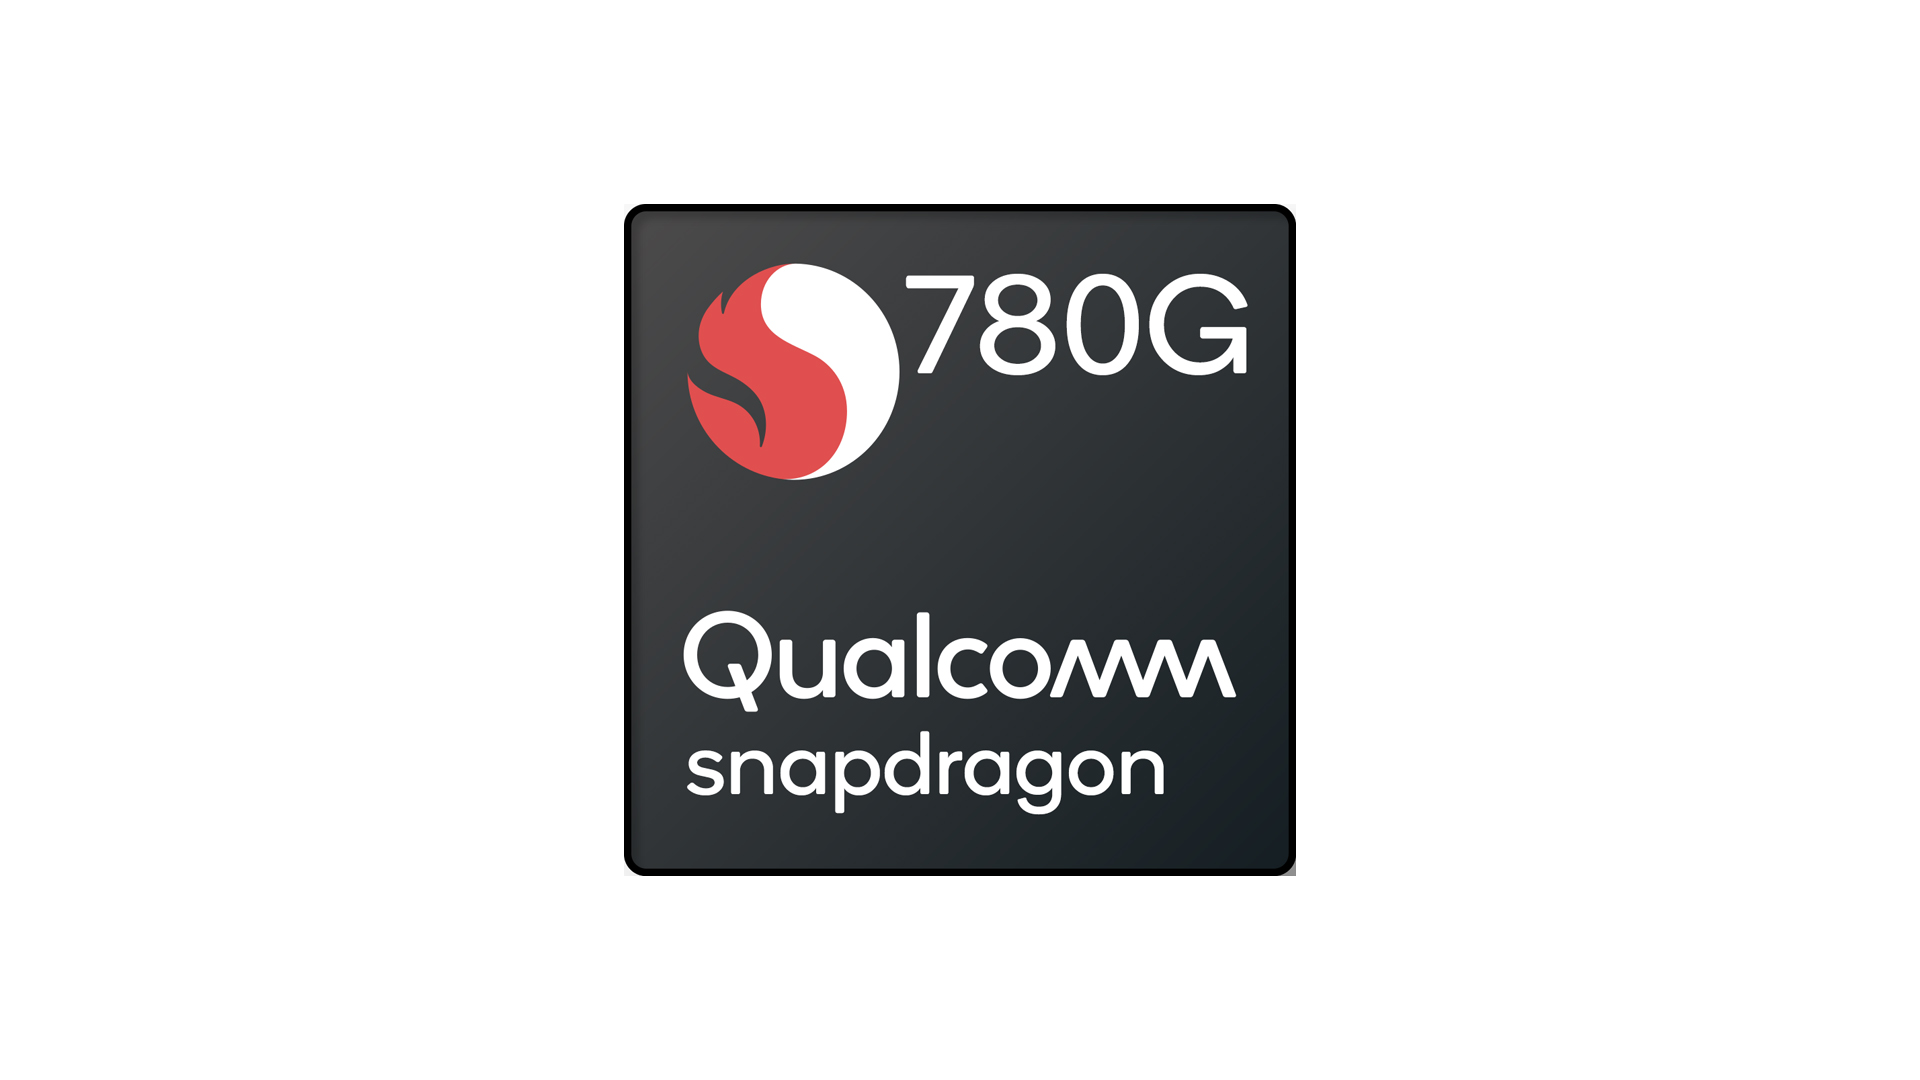 Stok Snapdragon 780G Dilaporkan Habis Memaksa Pengeluar Menggunakan Snapdragon 778G